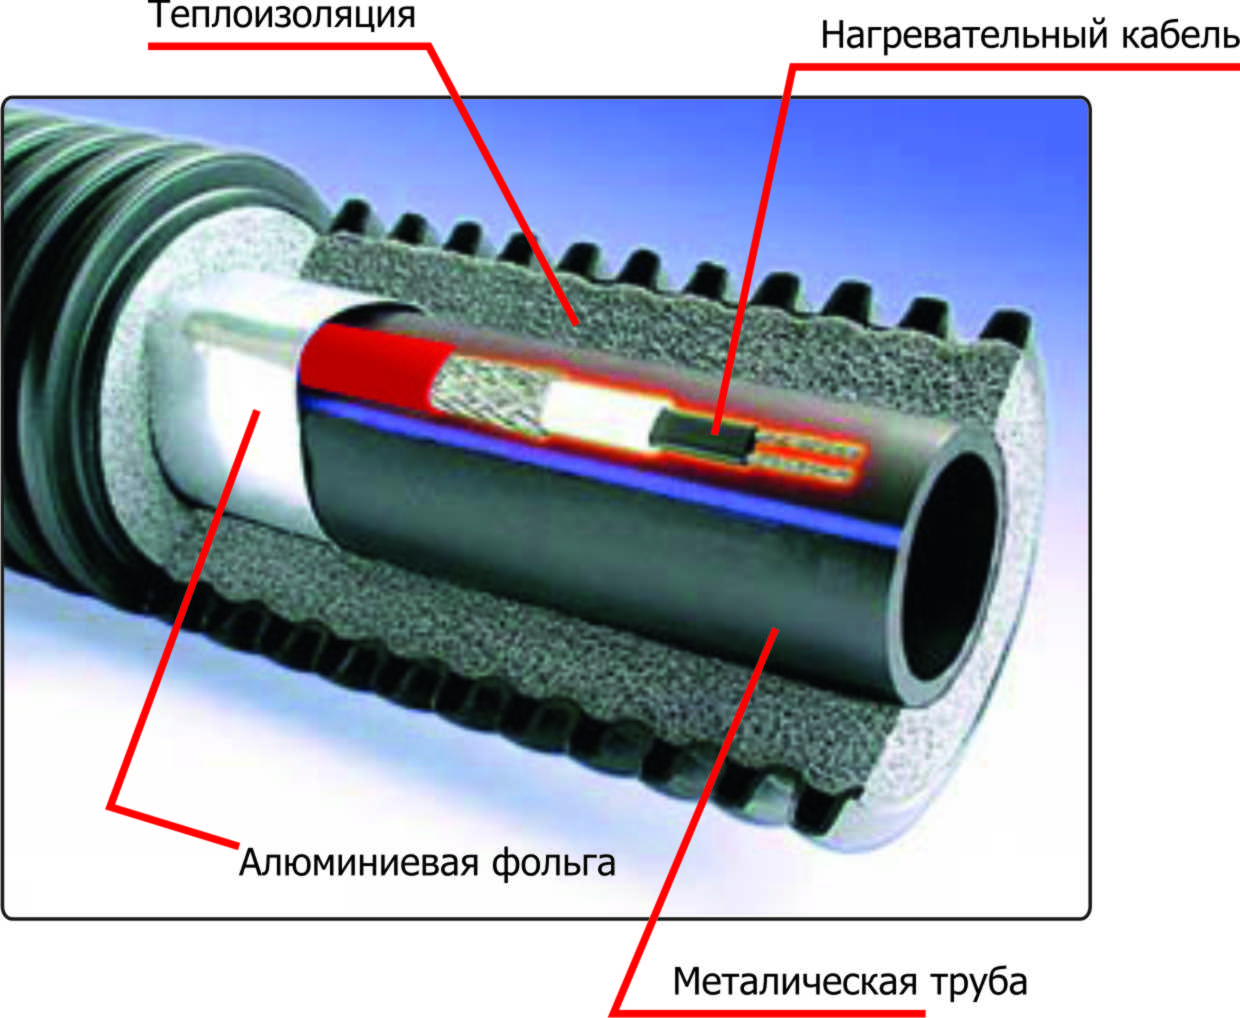 Инструкция по монтажу нагревательного ( греющего) кабеля на трубу